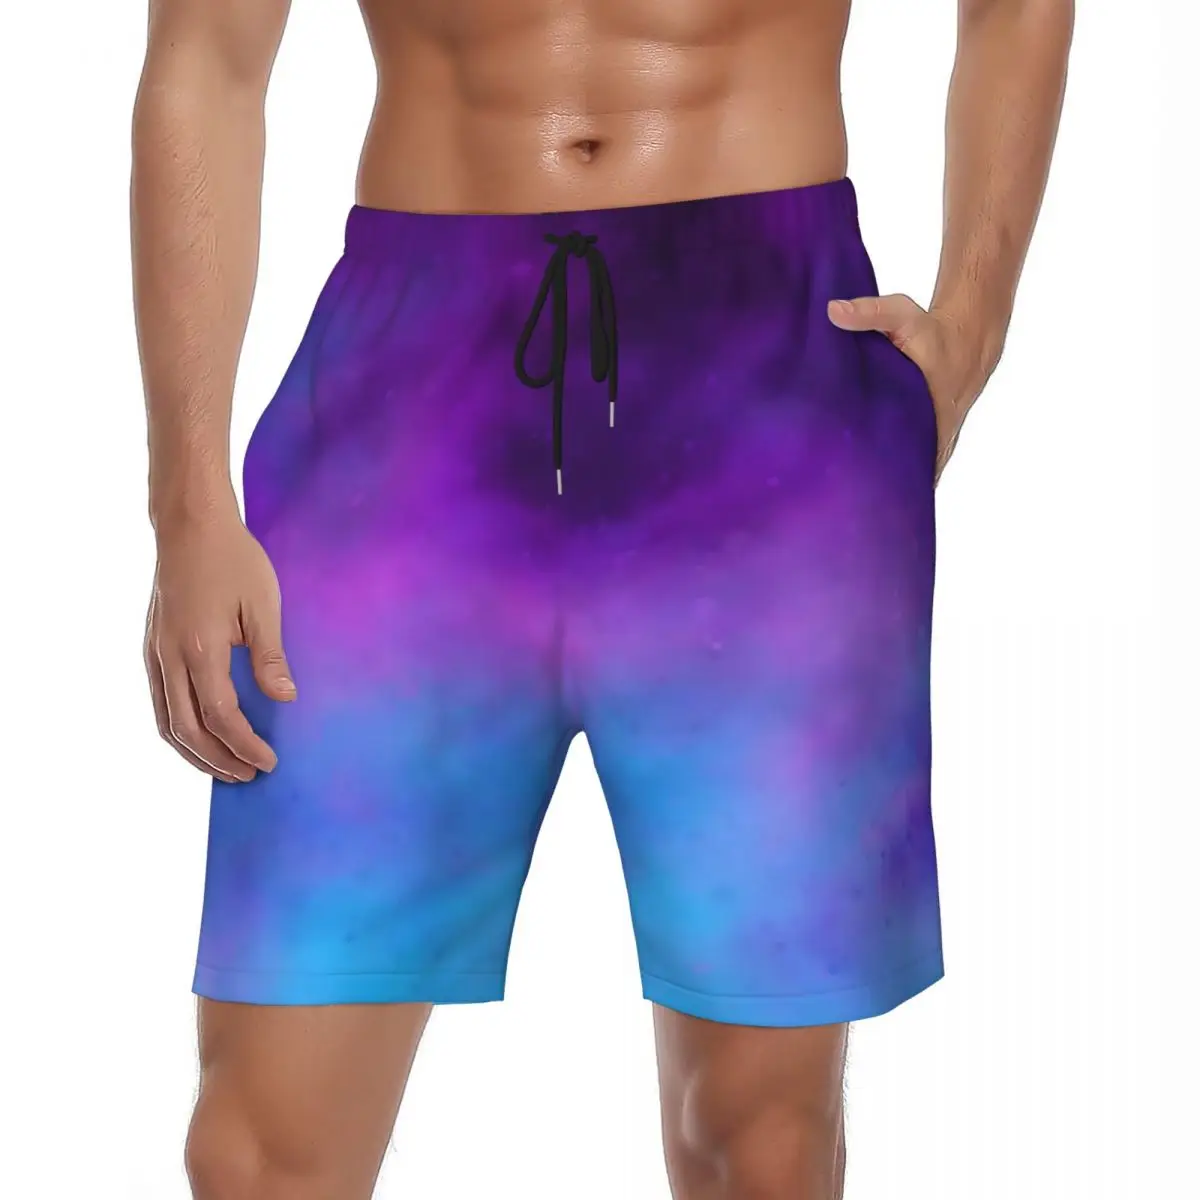 

Шорты мужские пляжные галактические, короткие штаны для бега с эффектом омбре, повседневные быстросохнущие, большие размеры, фиолетовый и синий цвета, на заказ